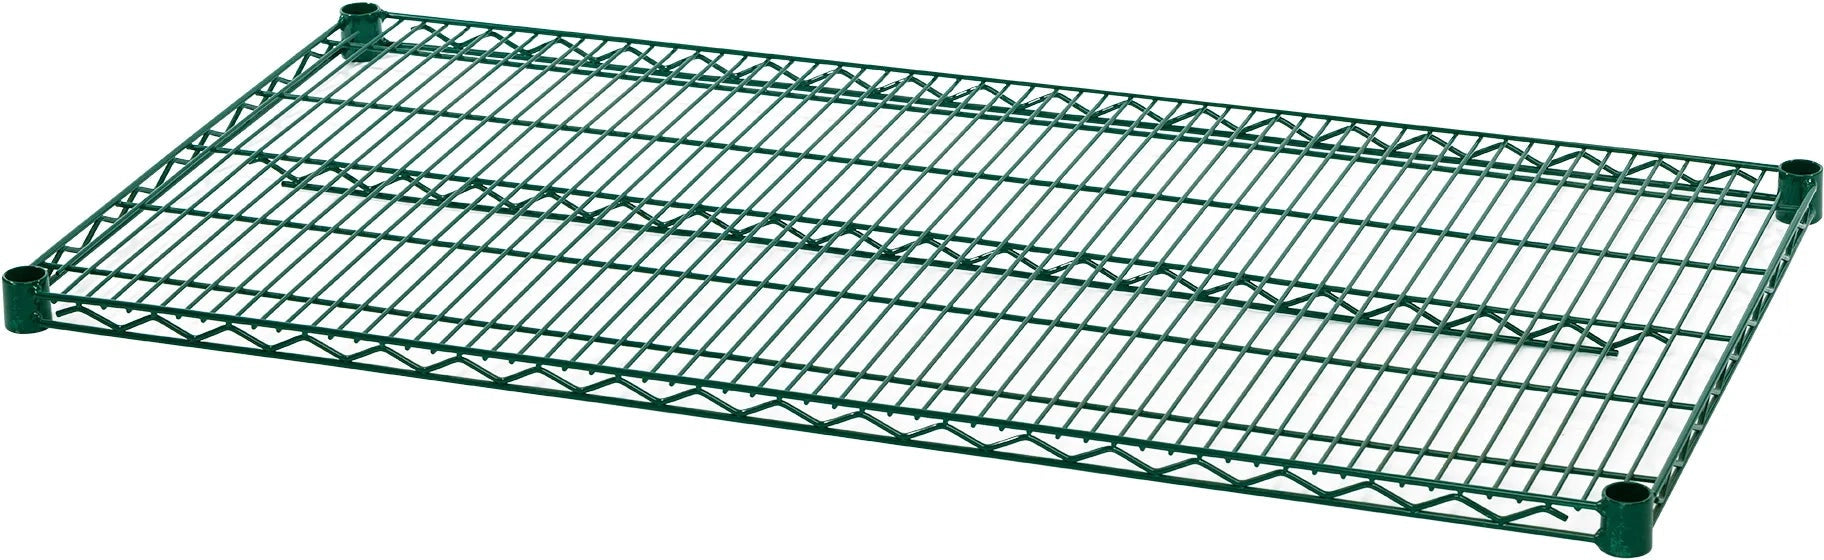 Julien - Rosko 72" x 14" Shelf For Wire Shelving, Green Epoxy - RO-WS-S7214-GE